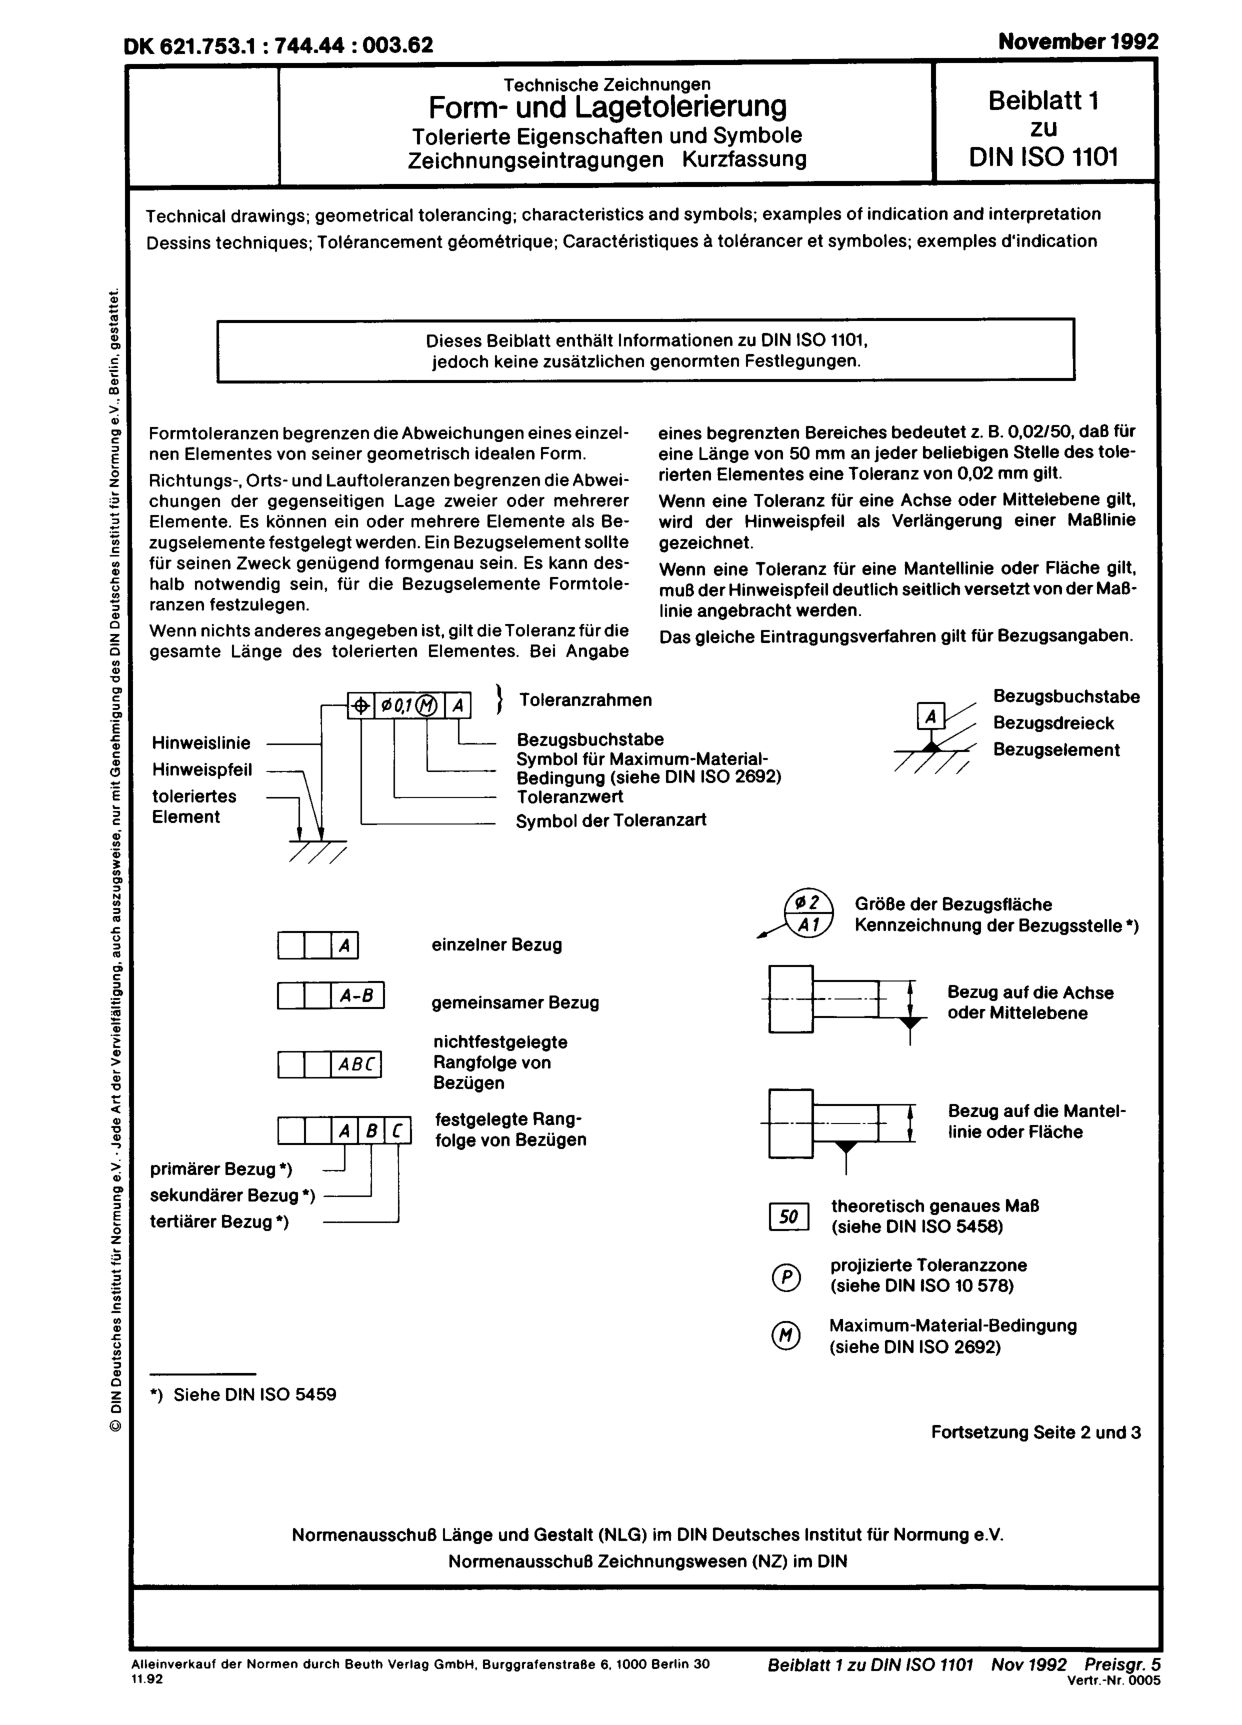 DIN ISO 1101 Beiblatt 1:1992-11